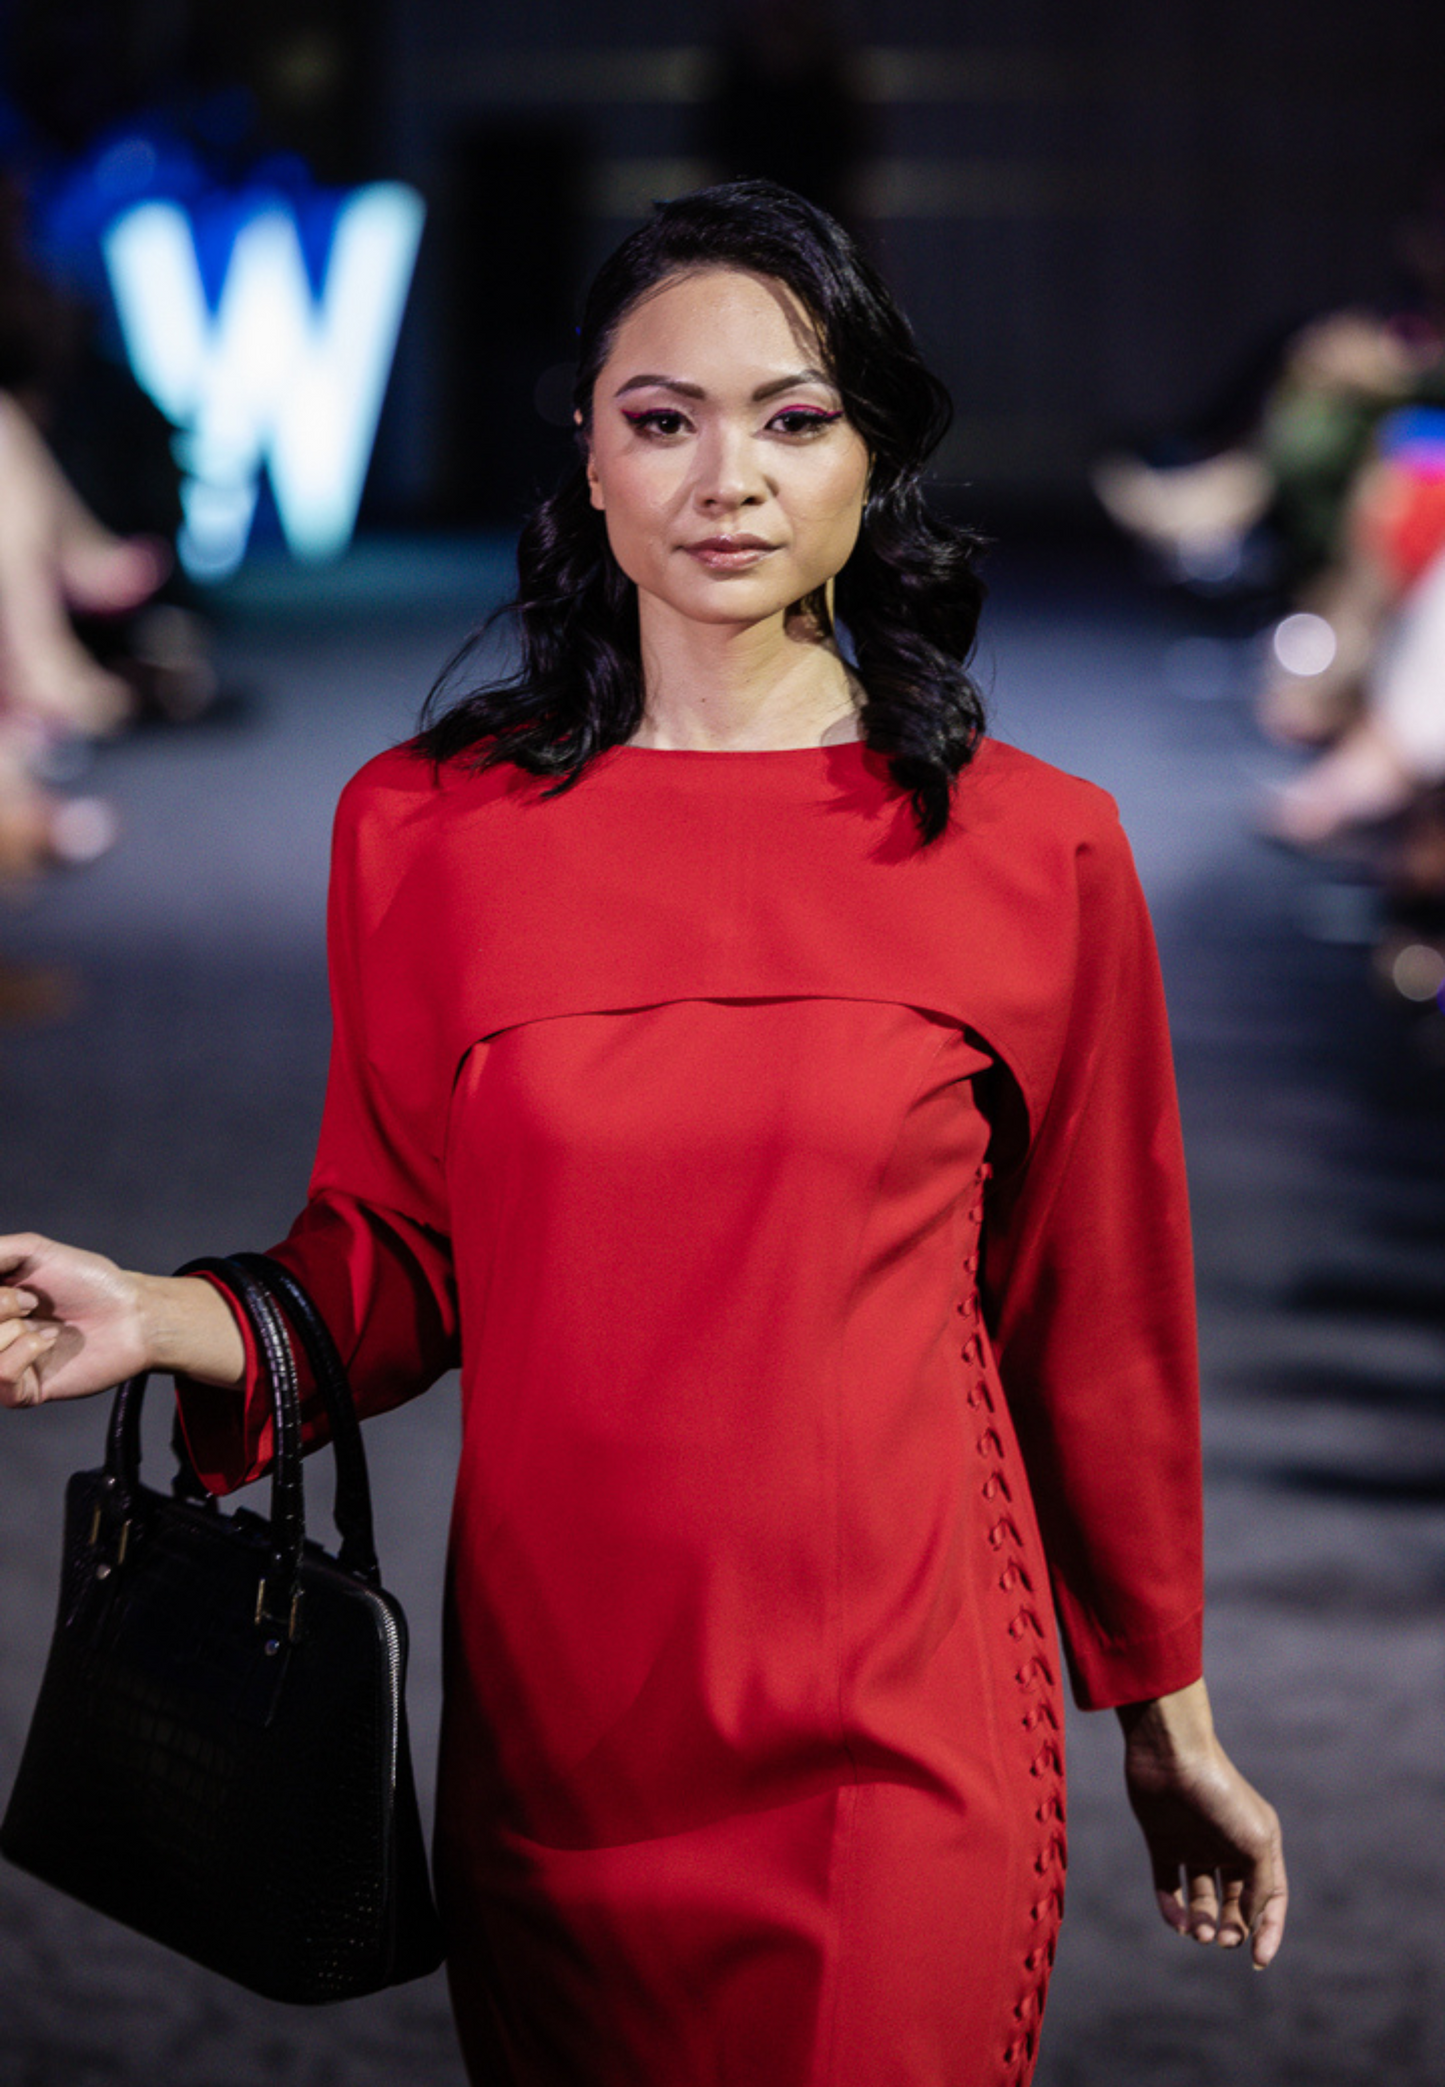 Marta Dress| Red Midi Dress with Lace